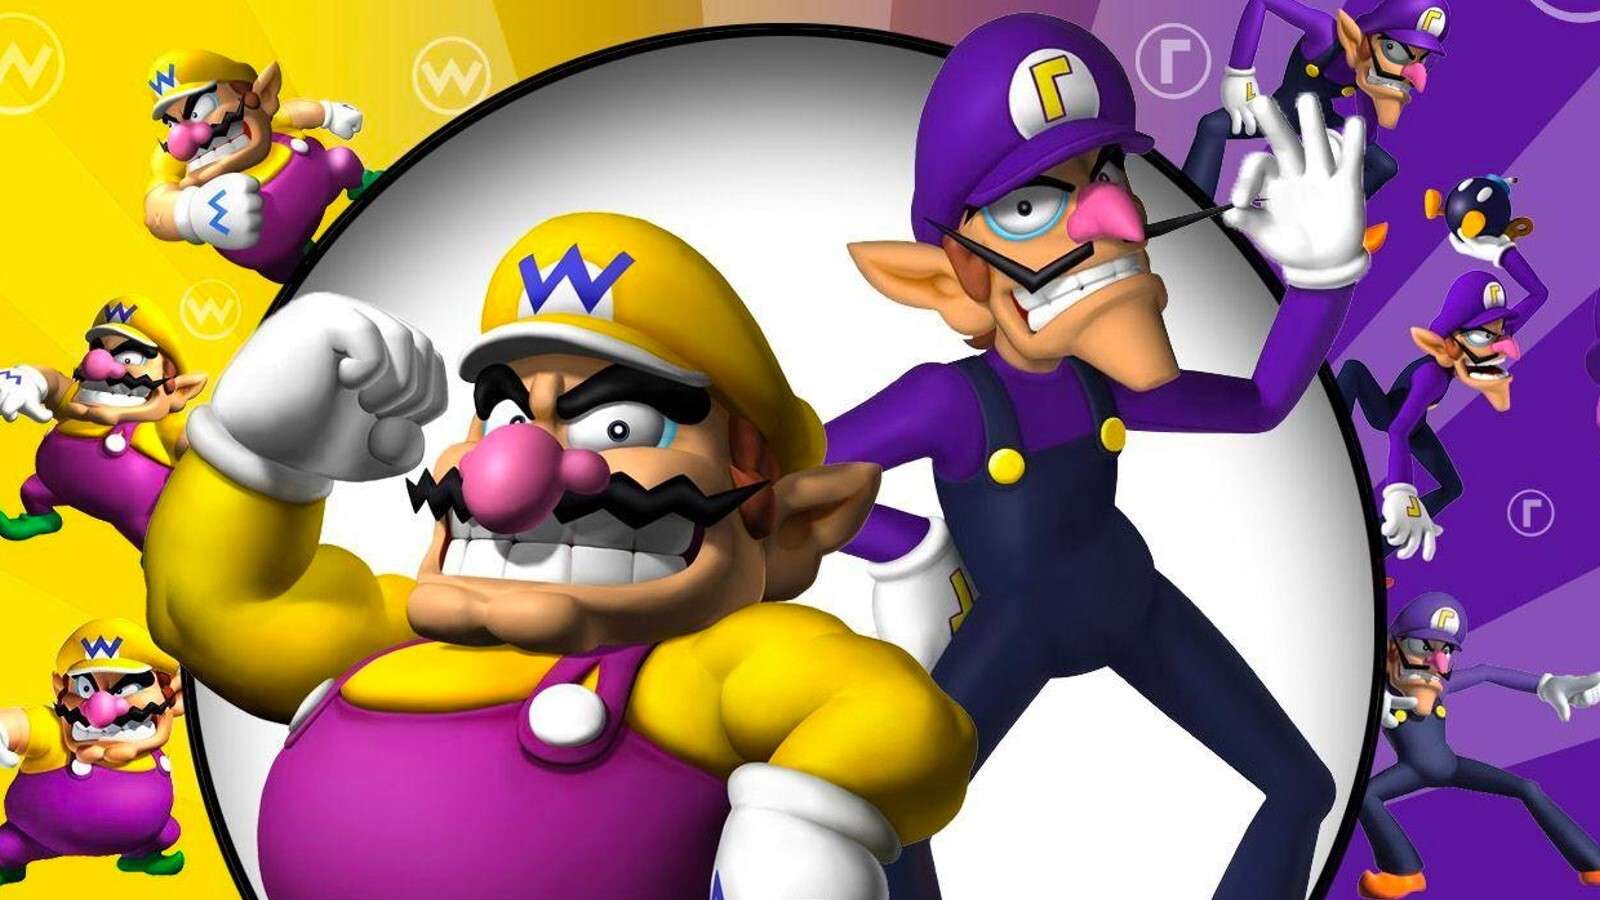 Wario and Waluigi in the Mario games.